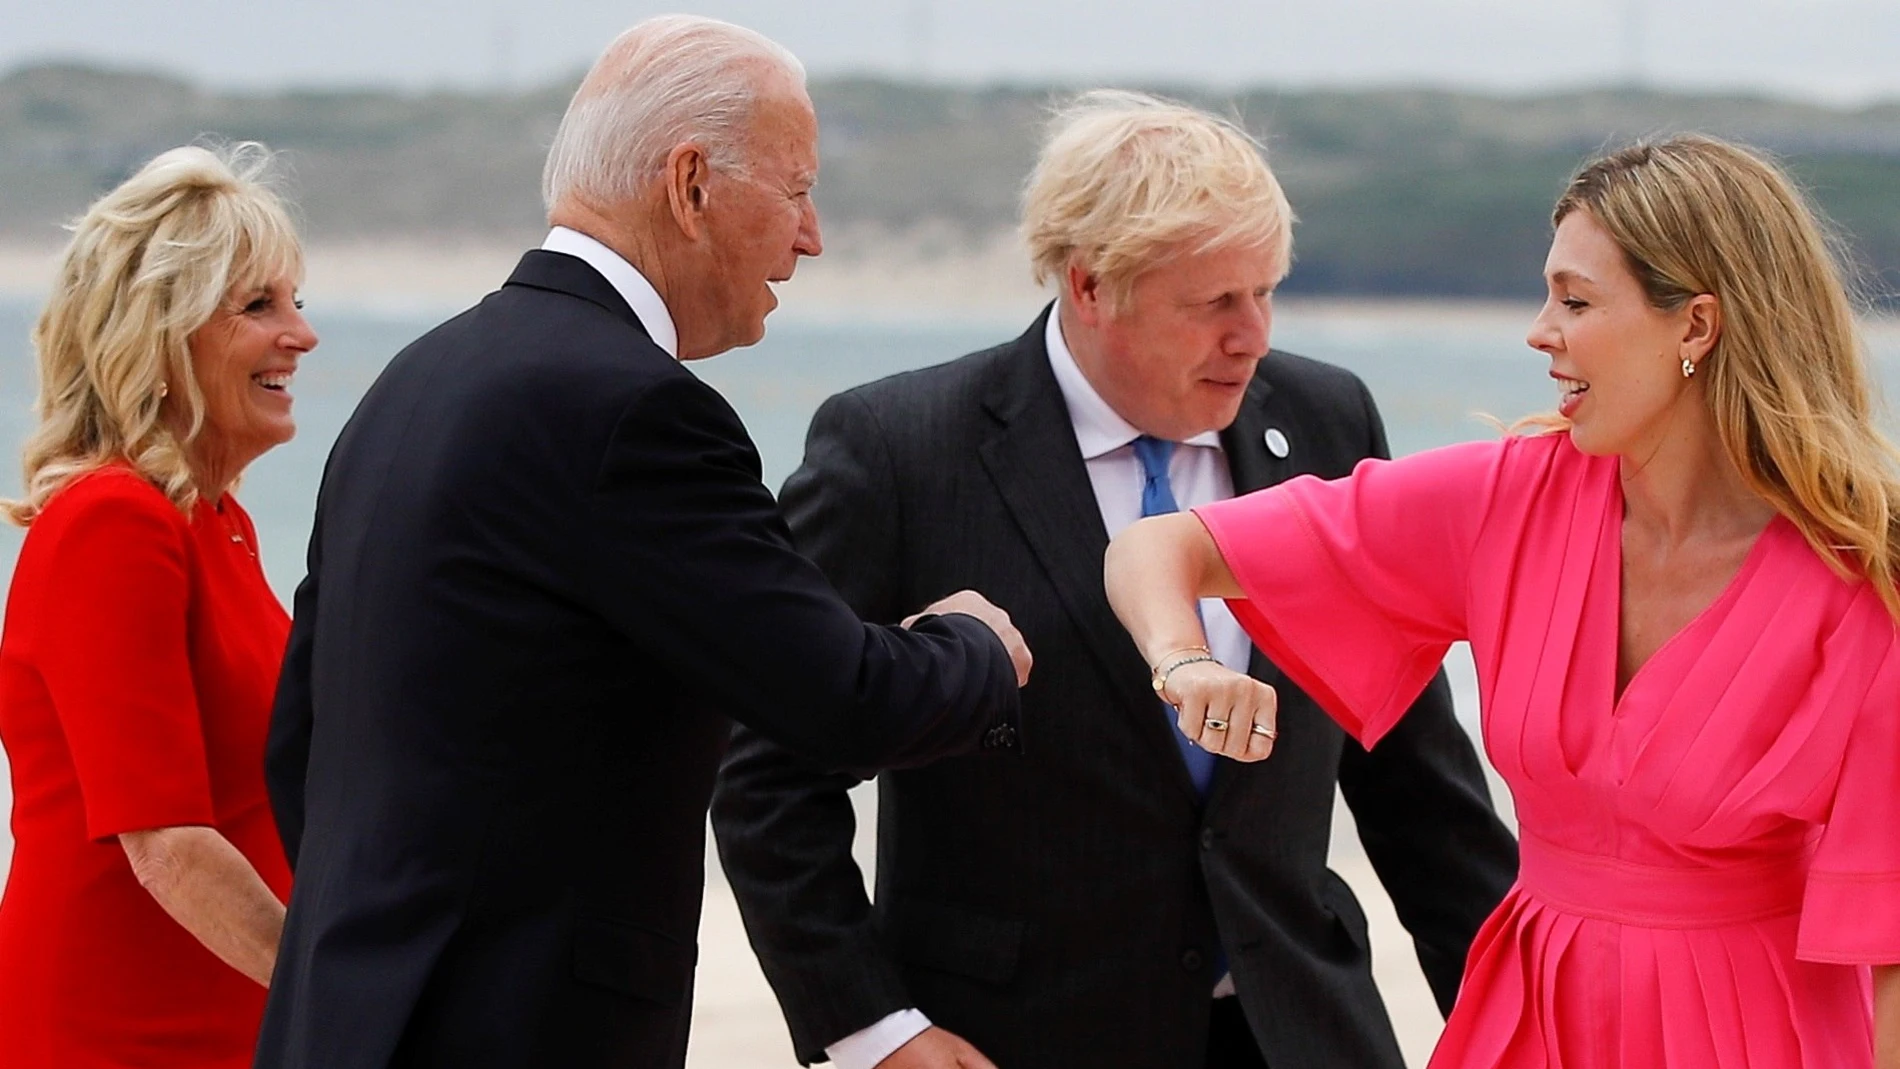 Carbis Bay (Reino Unido), 11/06/2021.- El primer ministro británico, Boris Johnson (2d), y su esposa Carrie Johnson (d) saludan al presidente estadounidense Joe Biden y a la primera dama Jill Biden, durante la cumbre del G7 en Carbis Bay, Cornwall, Gran Bretaña, 11 de junio de 2021. EFE/EPA/PHIL NOBLE / POOL